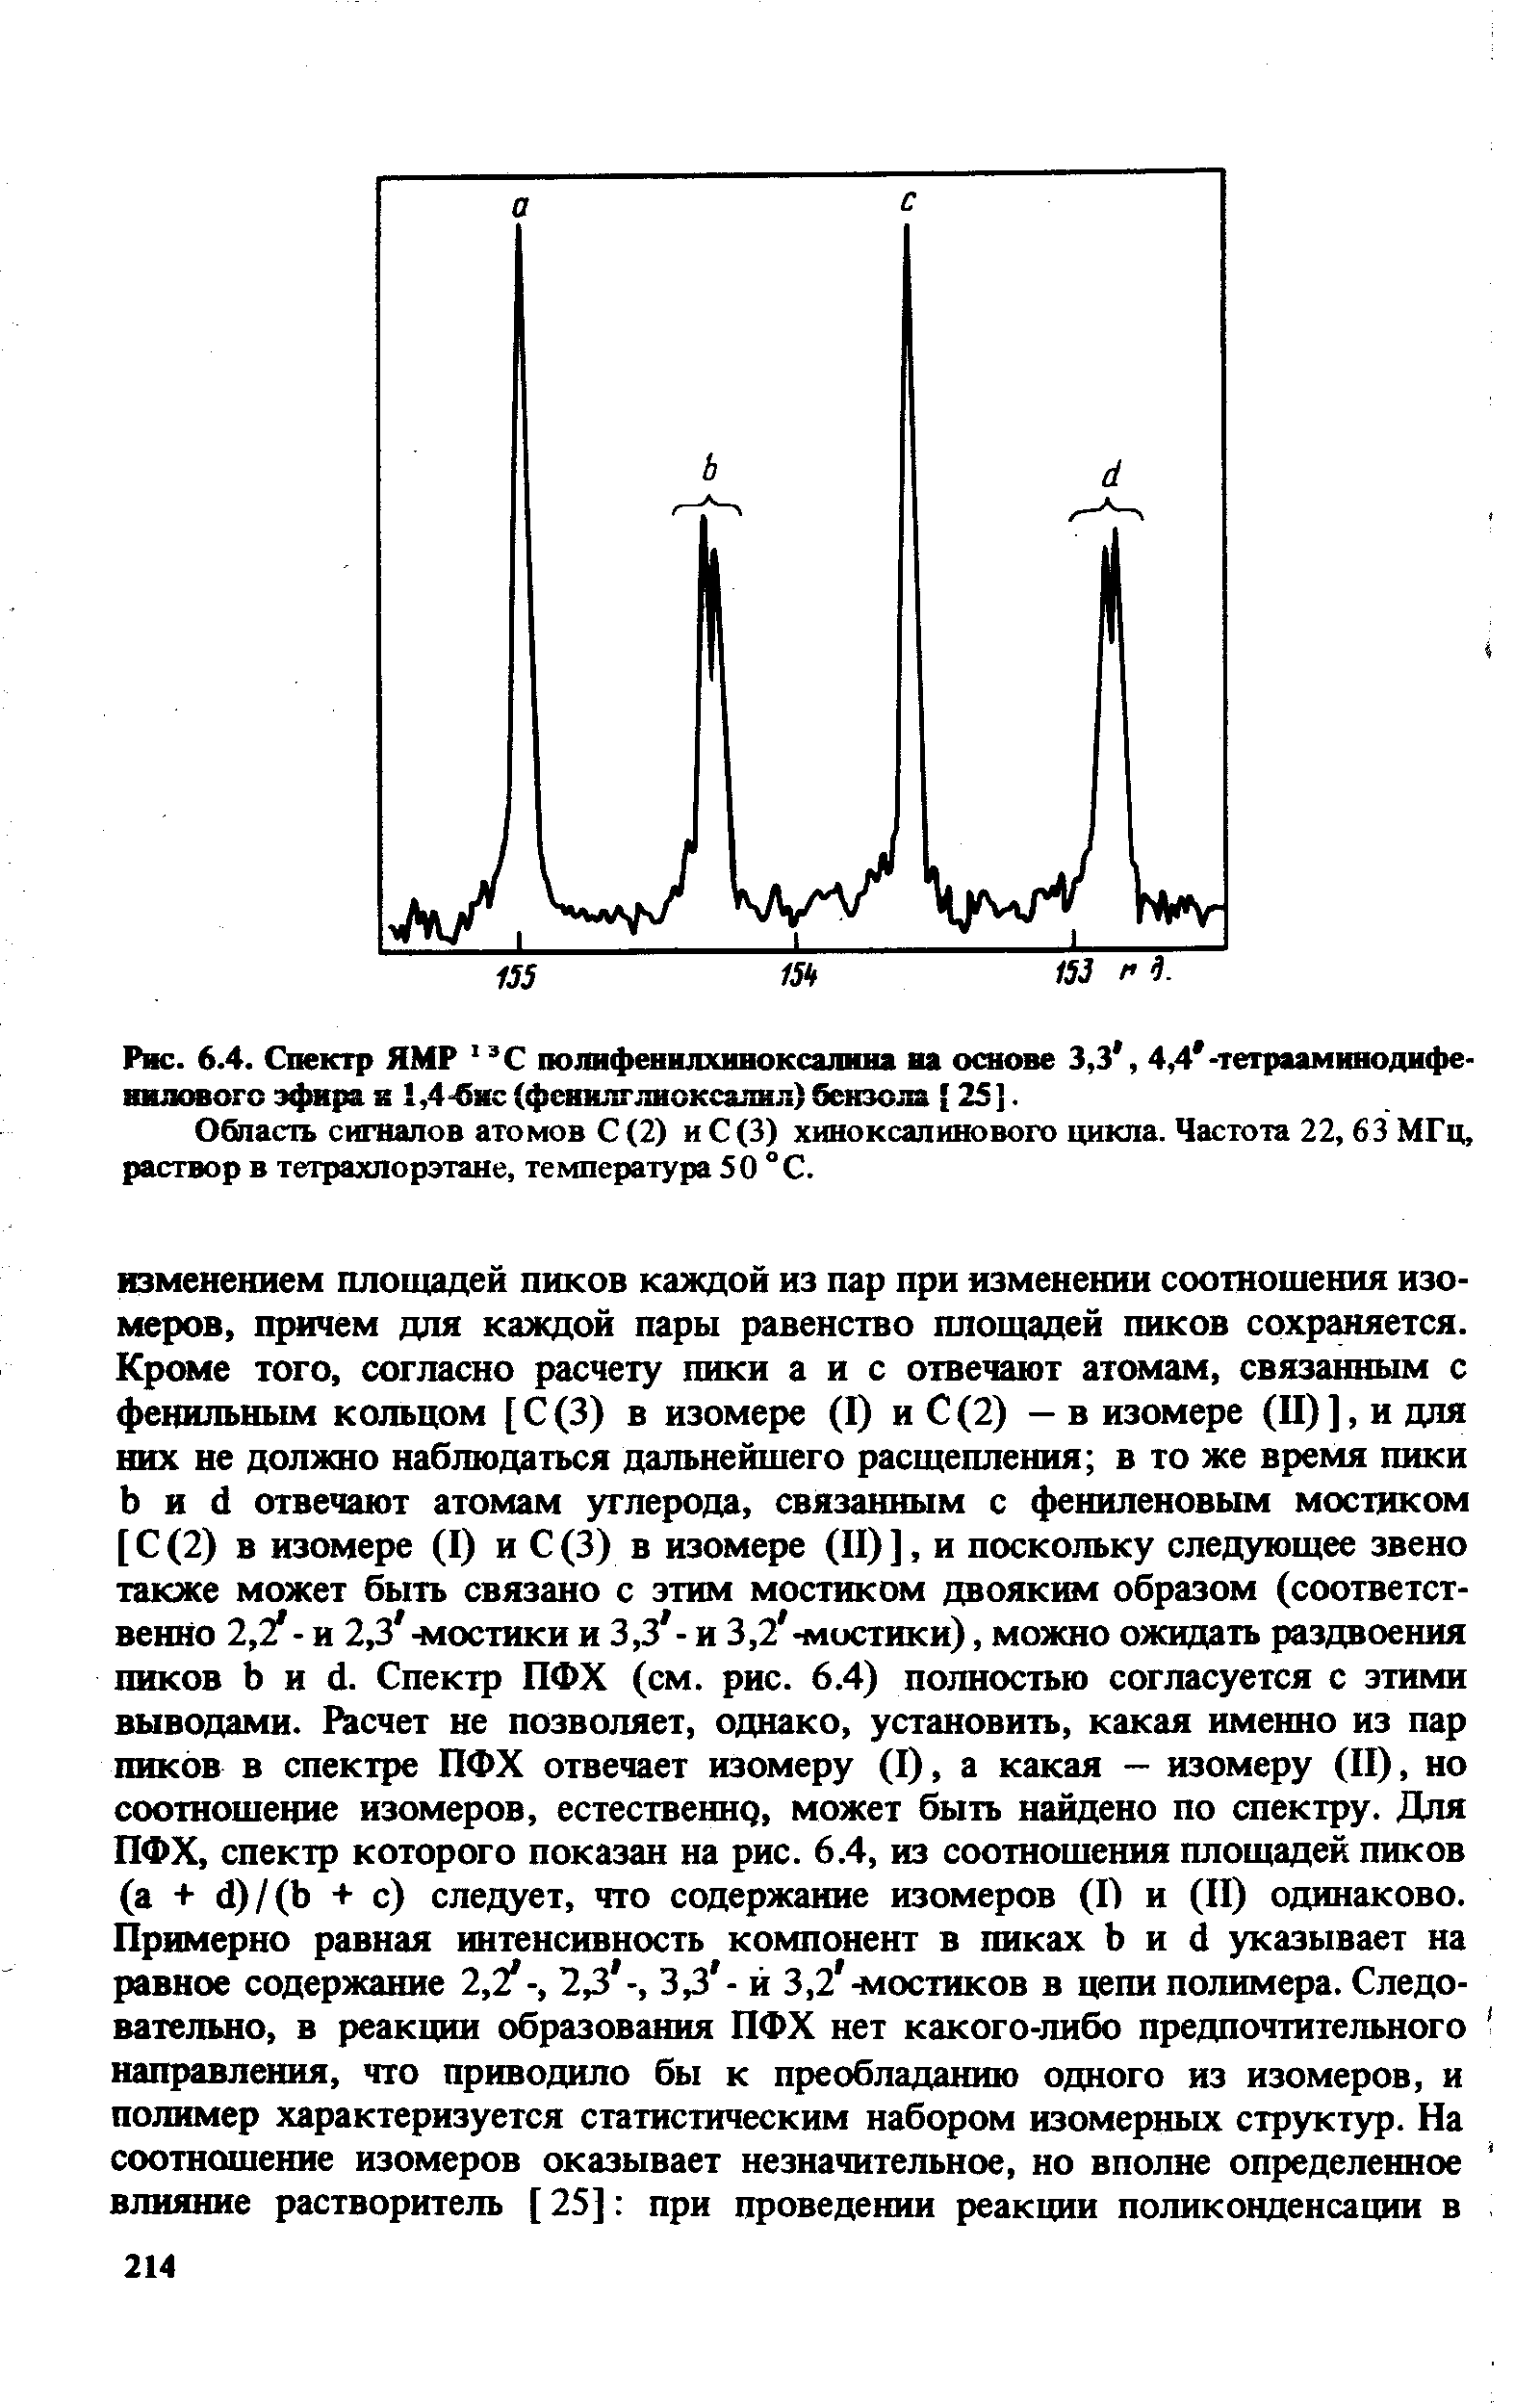 Область сигналов атомов С (2) иС(3) хиноксалинового цикла. Частота 22, 63 МГц, раствор в тетрахлорэтане, температура 50 °С.